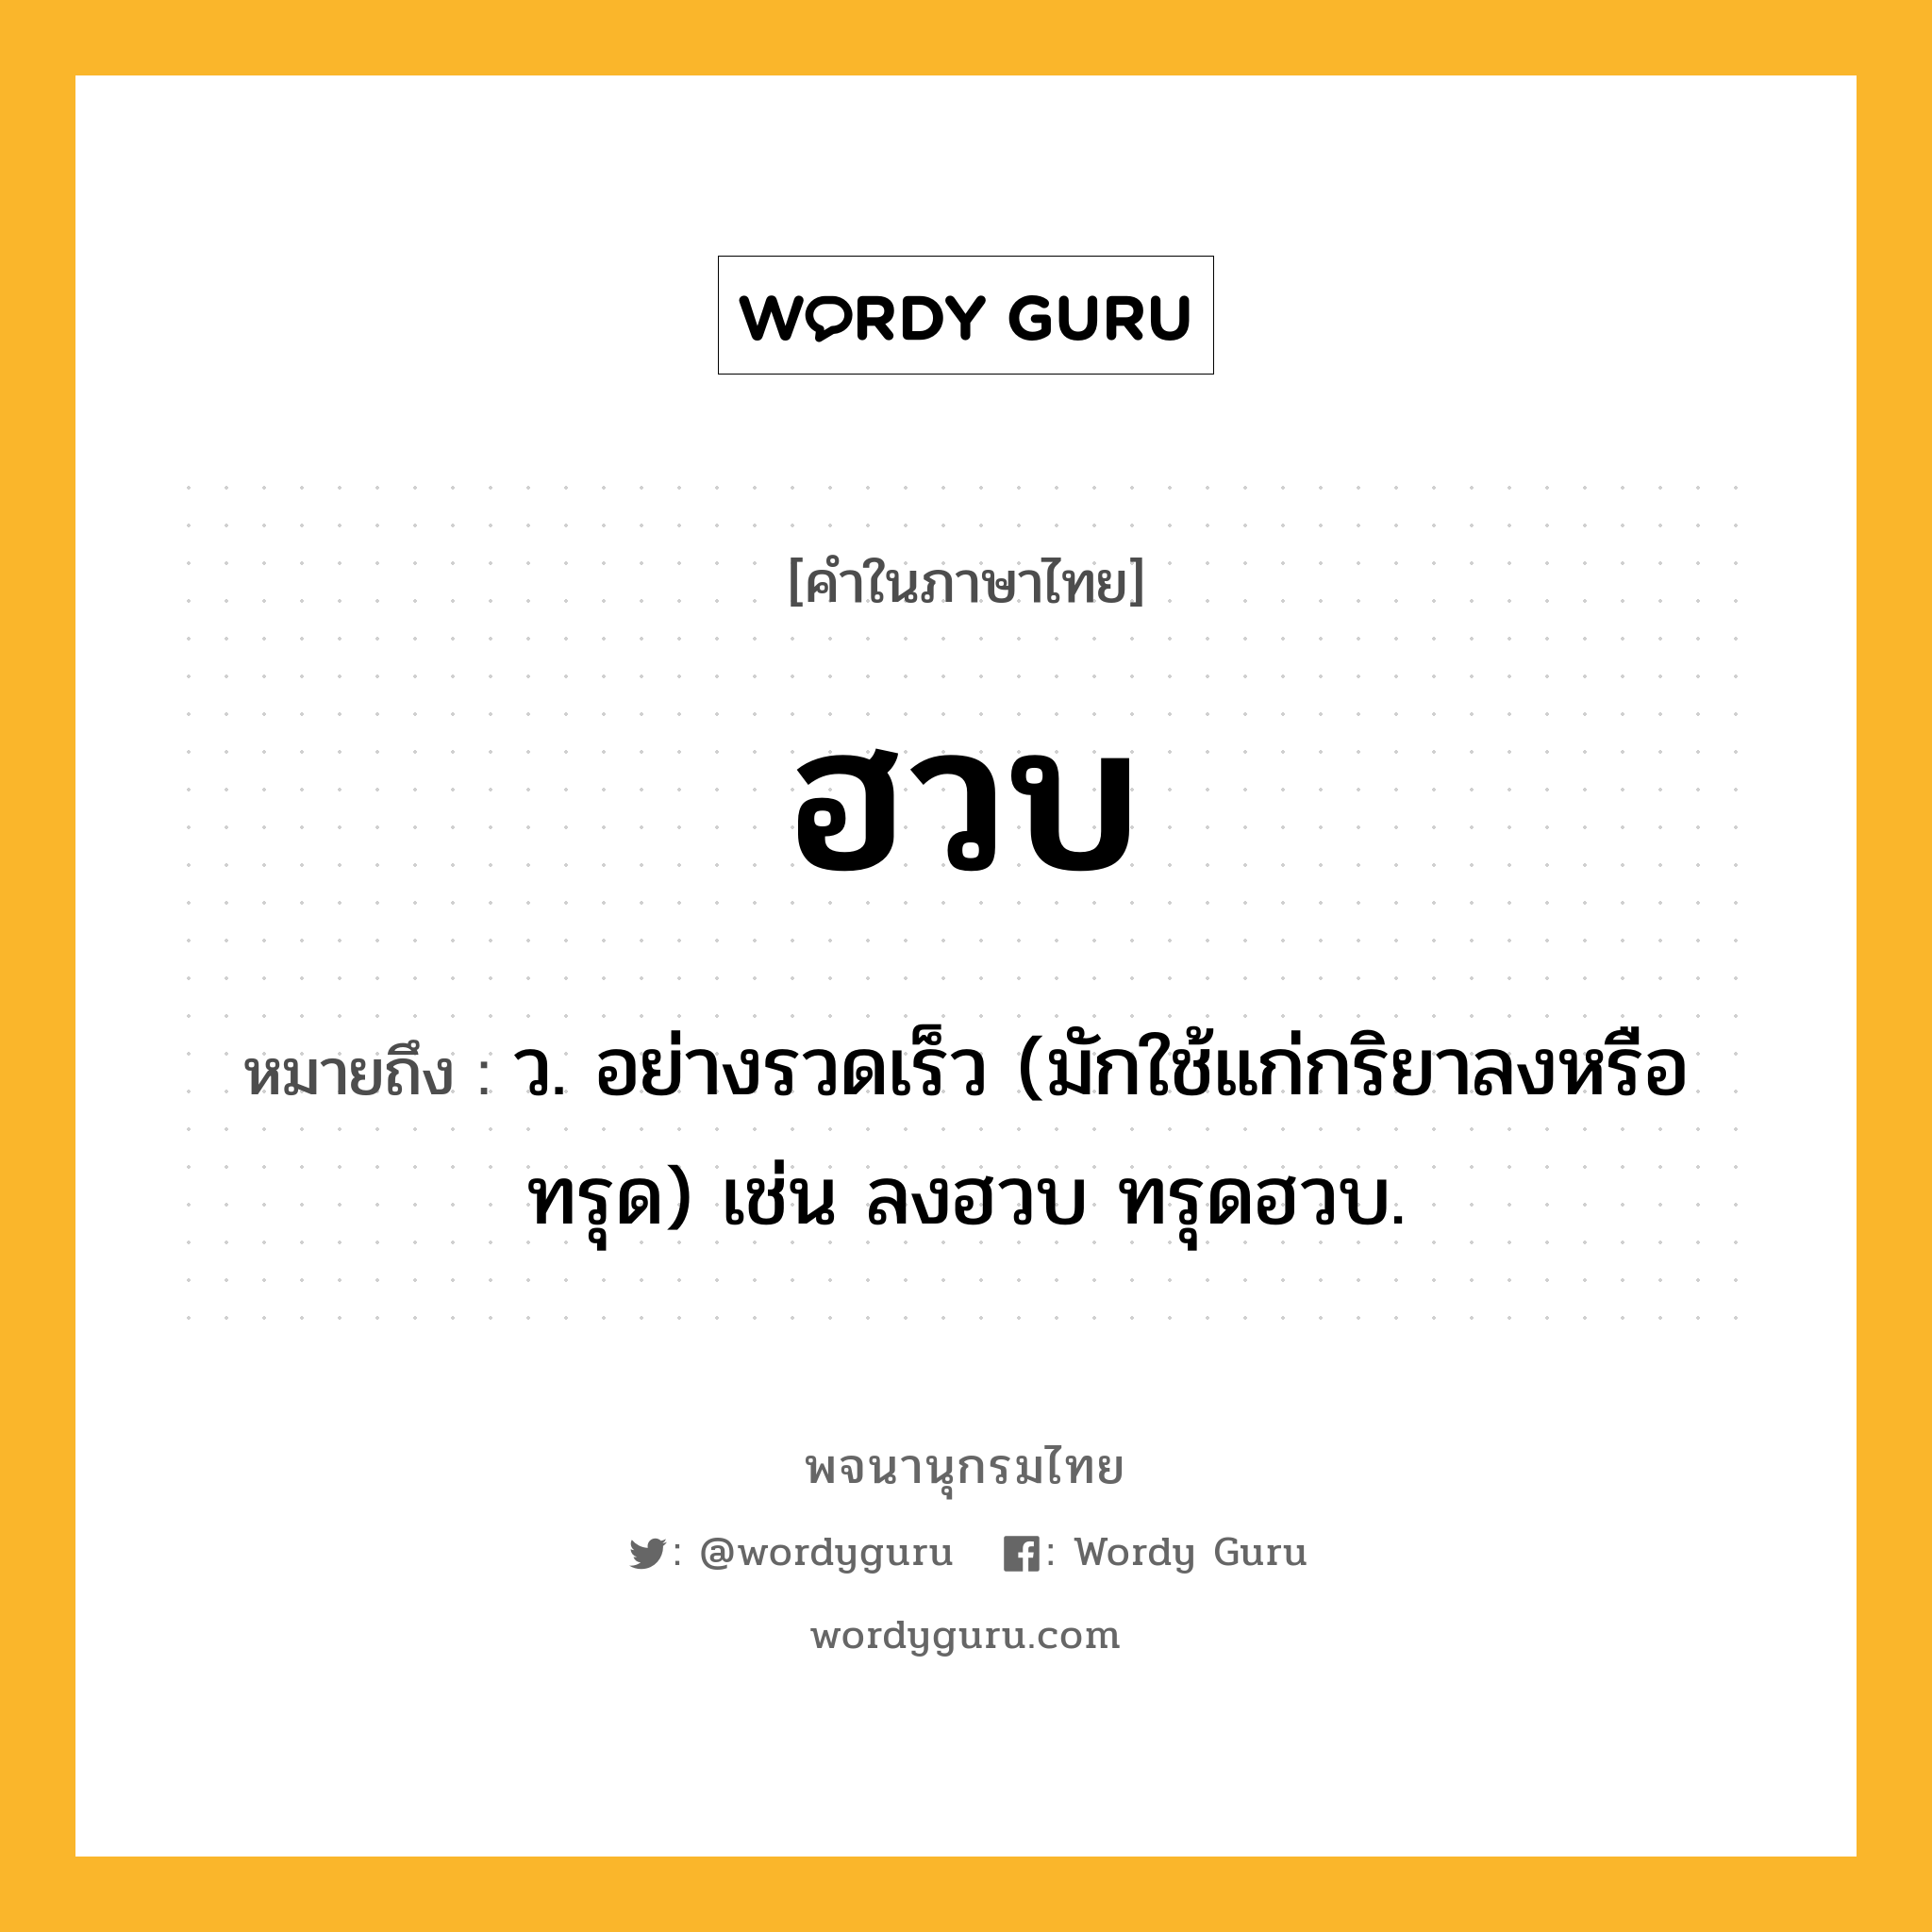 ฮวบ ความหมาย หมายถึงอะไร?, คำในภาษาไทย ฮวบ หมายถึง ว. อย่างรวดเร็ว (มักใช้แก่กริยาลงหรือทรุด) เช่น ลงฮวบ ทรุดฮวบ.